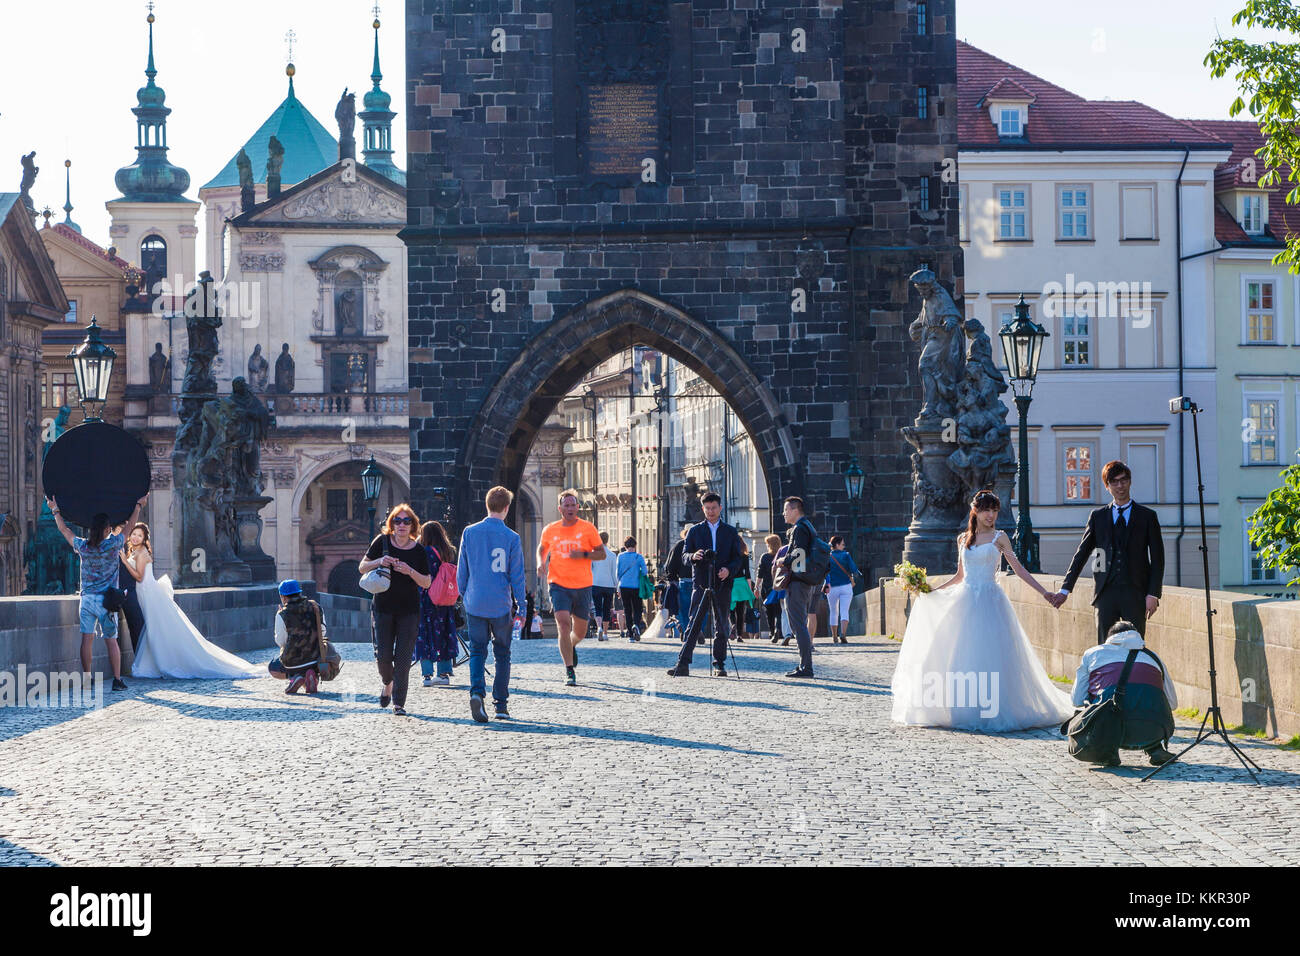 Tschechien, Prag, Altstadt, Karlsbrücke, asiatische Hochzeit Paare, Hochzeit, Heiraten, Wedding Dress Stockfoto